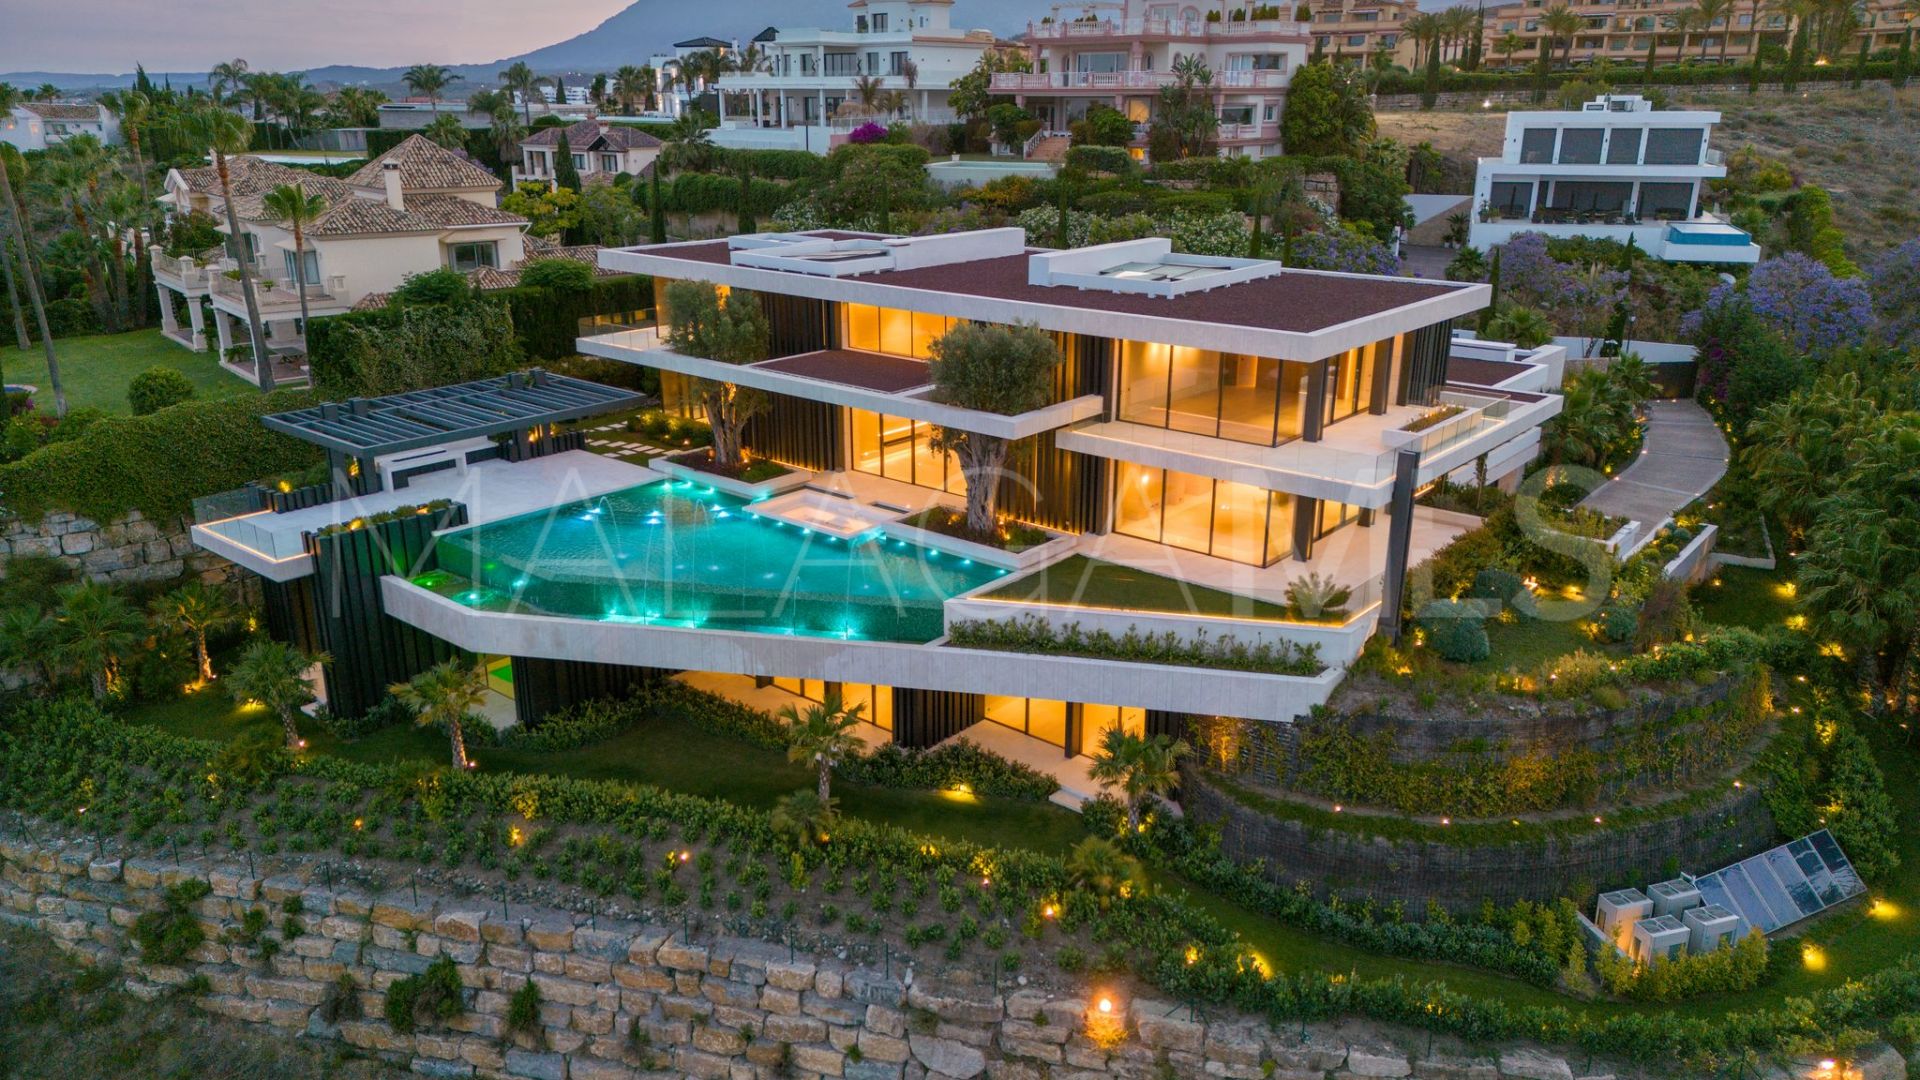 For sale villa with 12 bedrooms in Los Flamingos